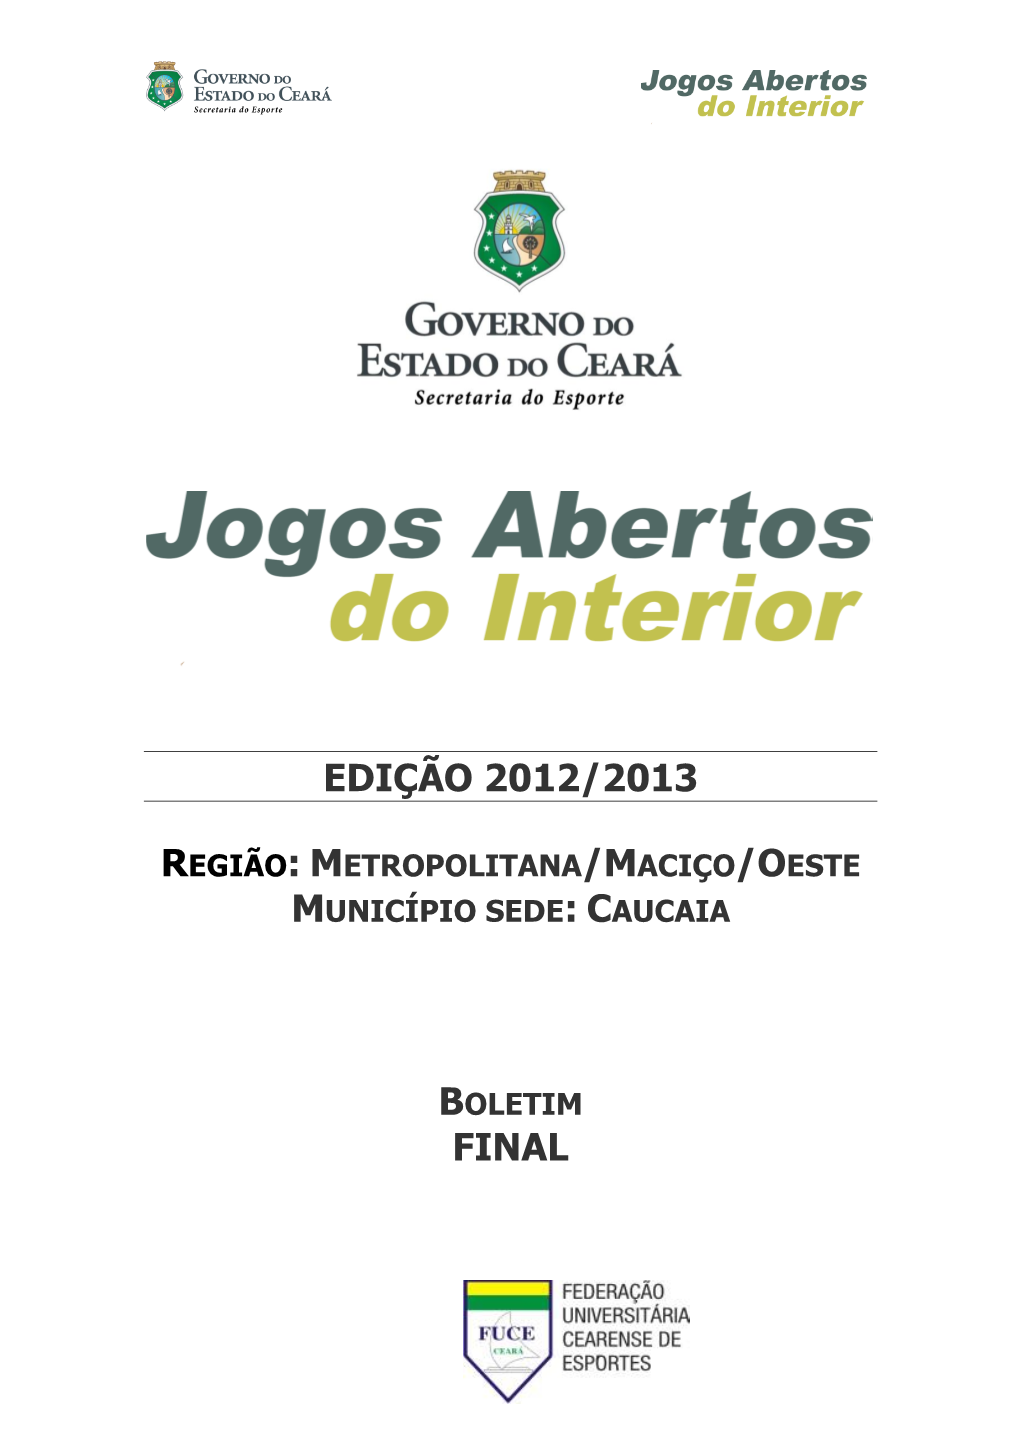 Edição 2012/2013 Final